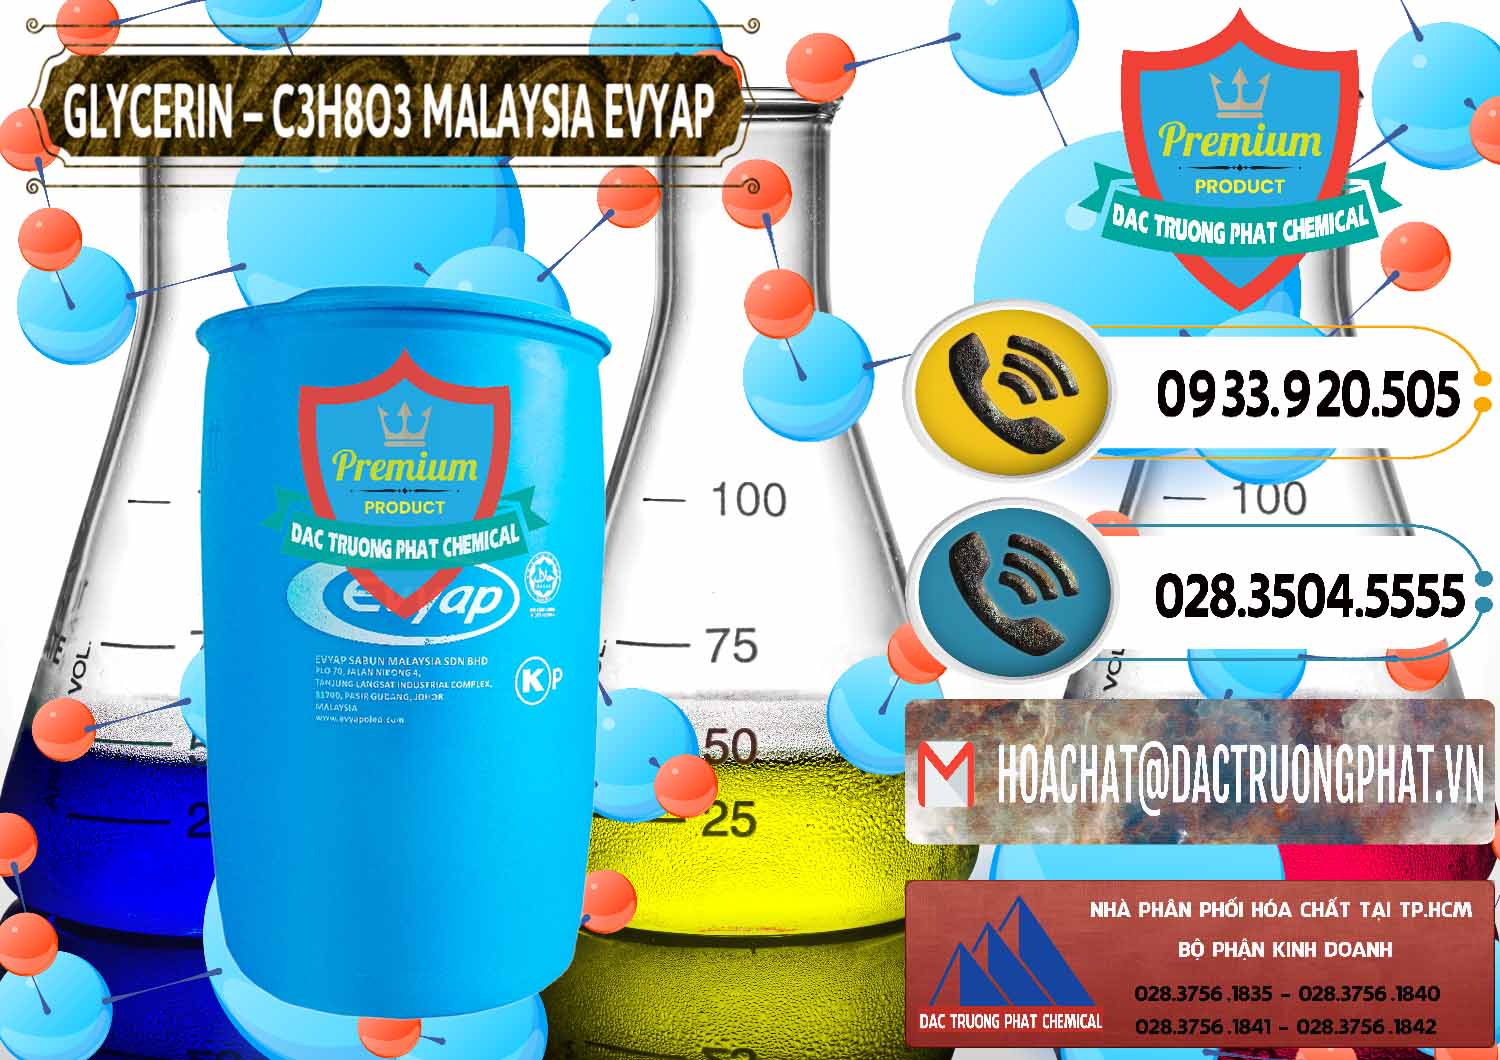 Cty chuyên nhập khẩu & bán Glycerin – C3H8O3 Malaysia Evyap - 0066 - Nơi chuyên phân phối ( kinh doanh ) hóa chất tại TP.HCM - hoachatdetnhuom.vn